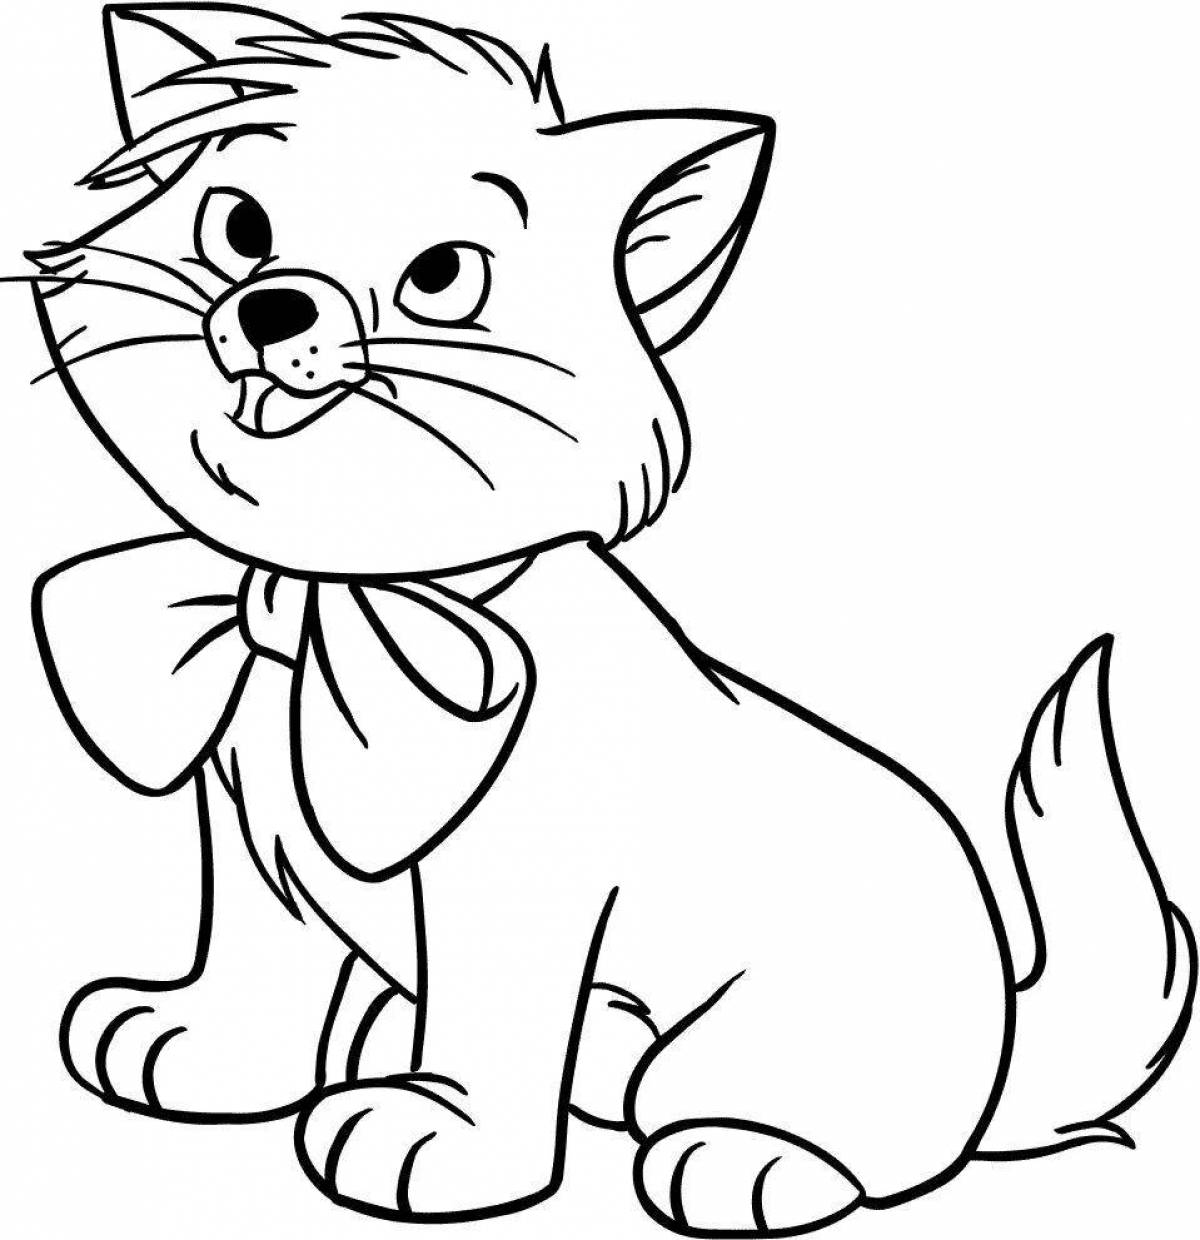 Яркая раскраска кошка для детей 5-6 лет